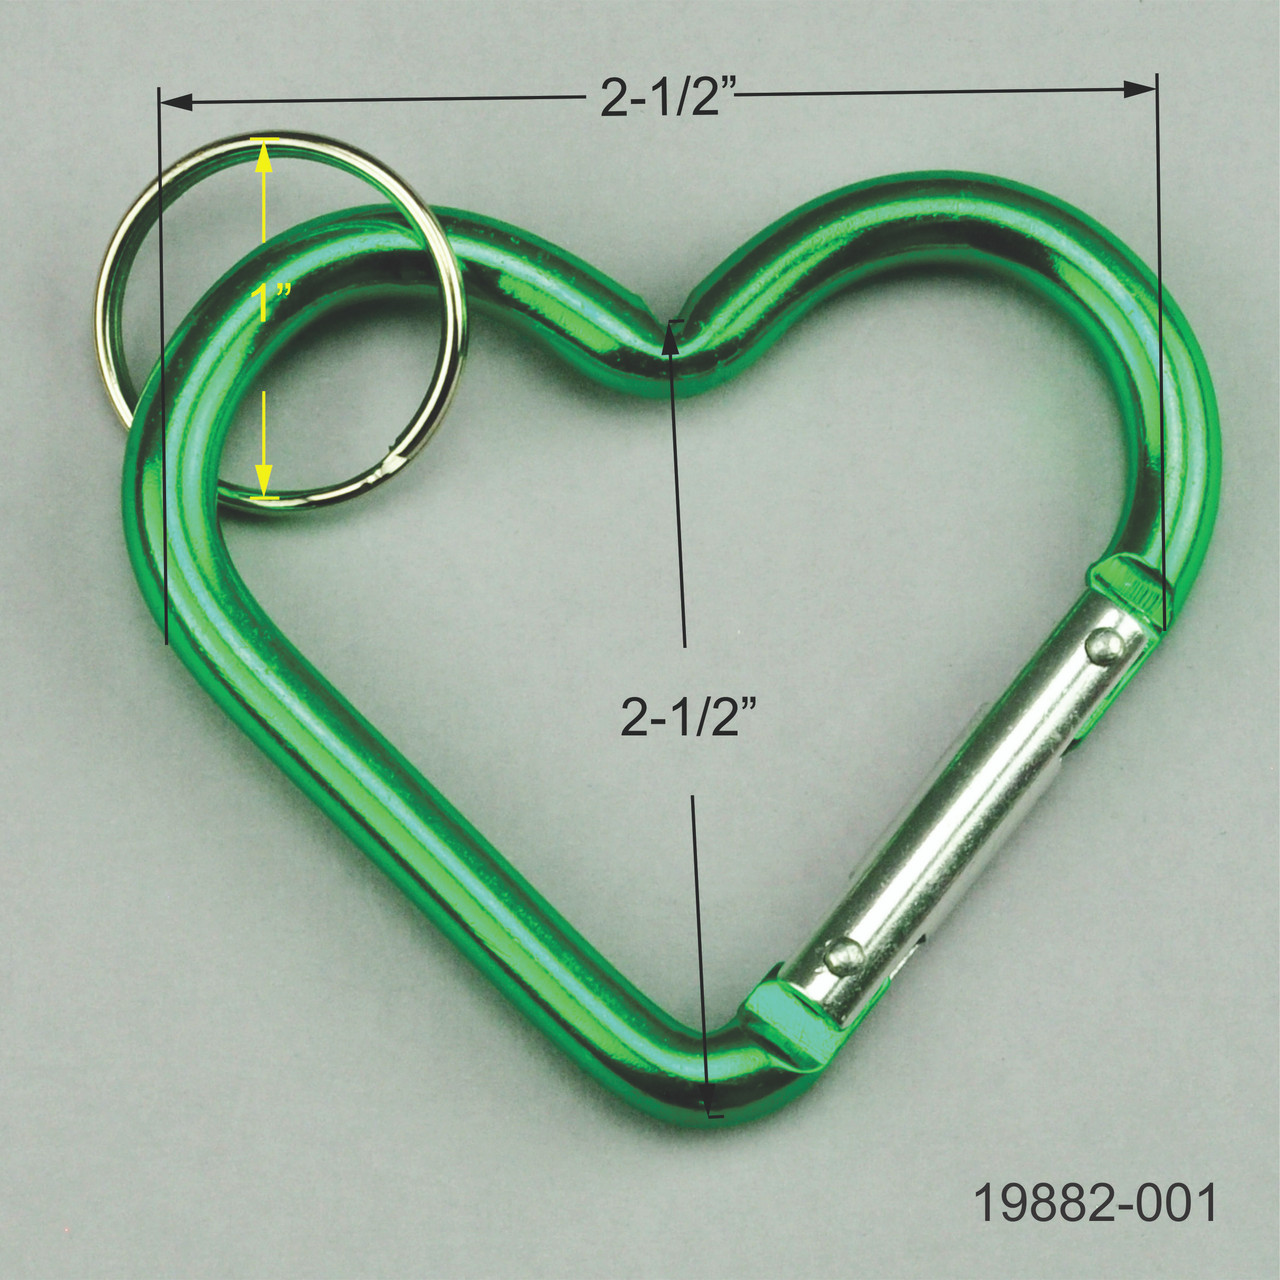 Heart Shaped Carabiner Lock Chain